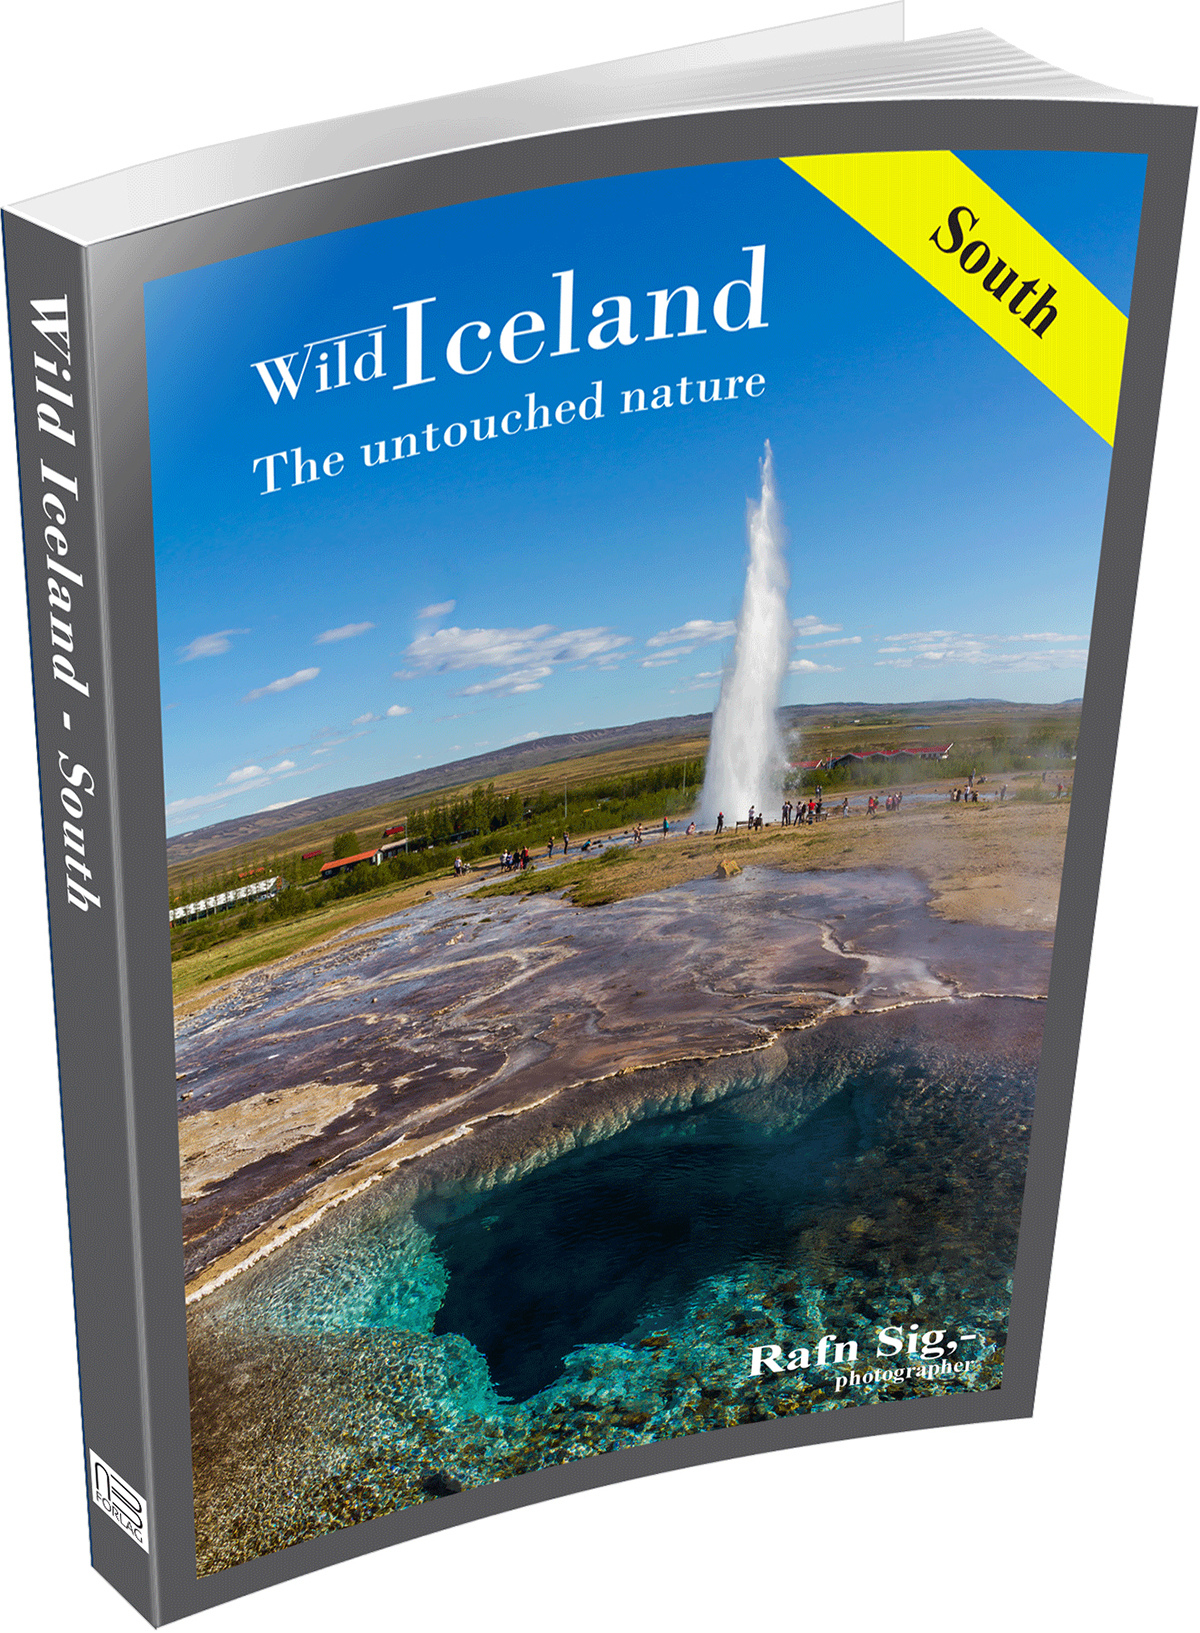 Wild Iceland photo books photos